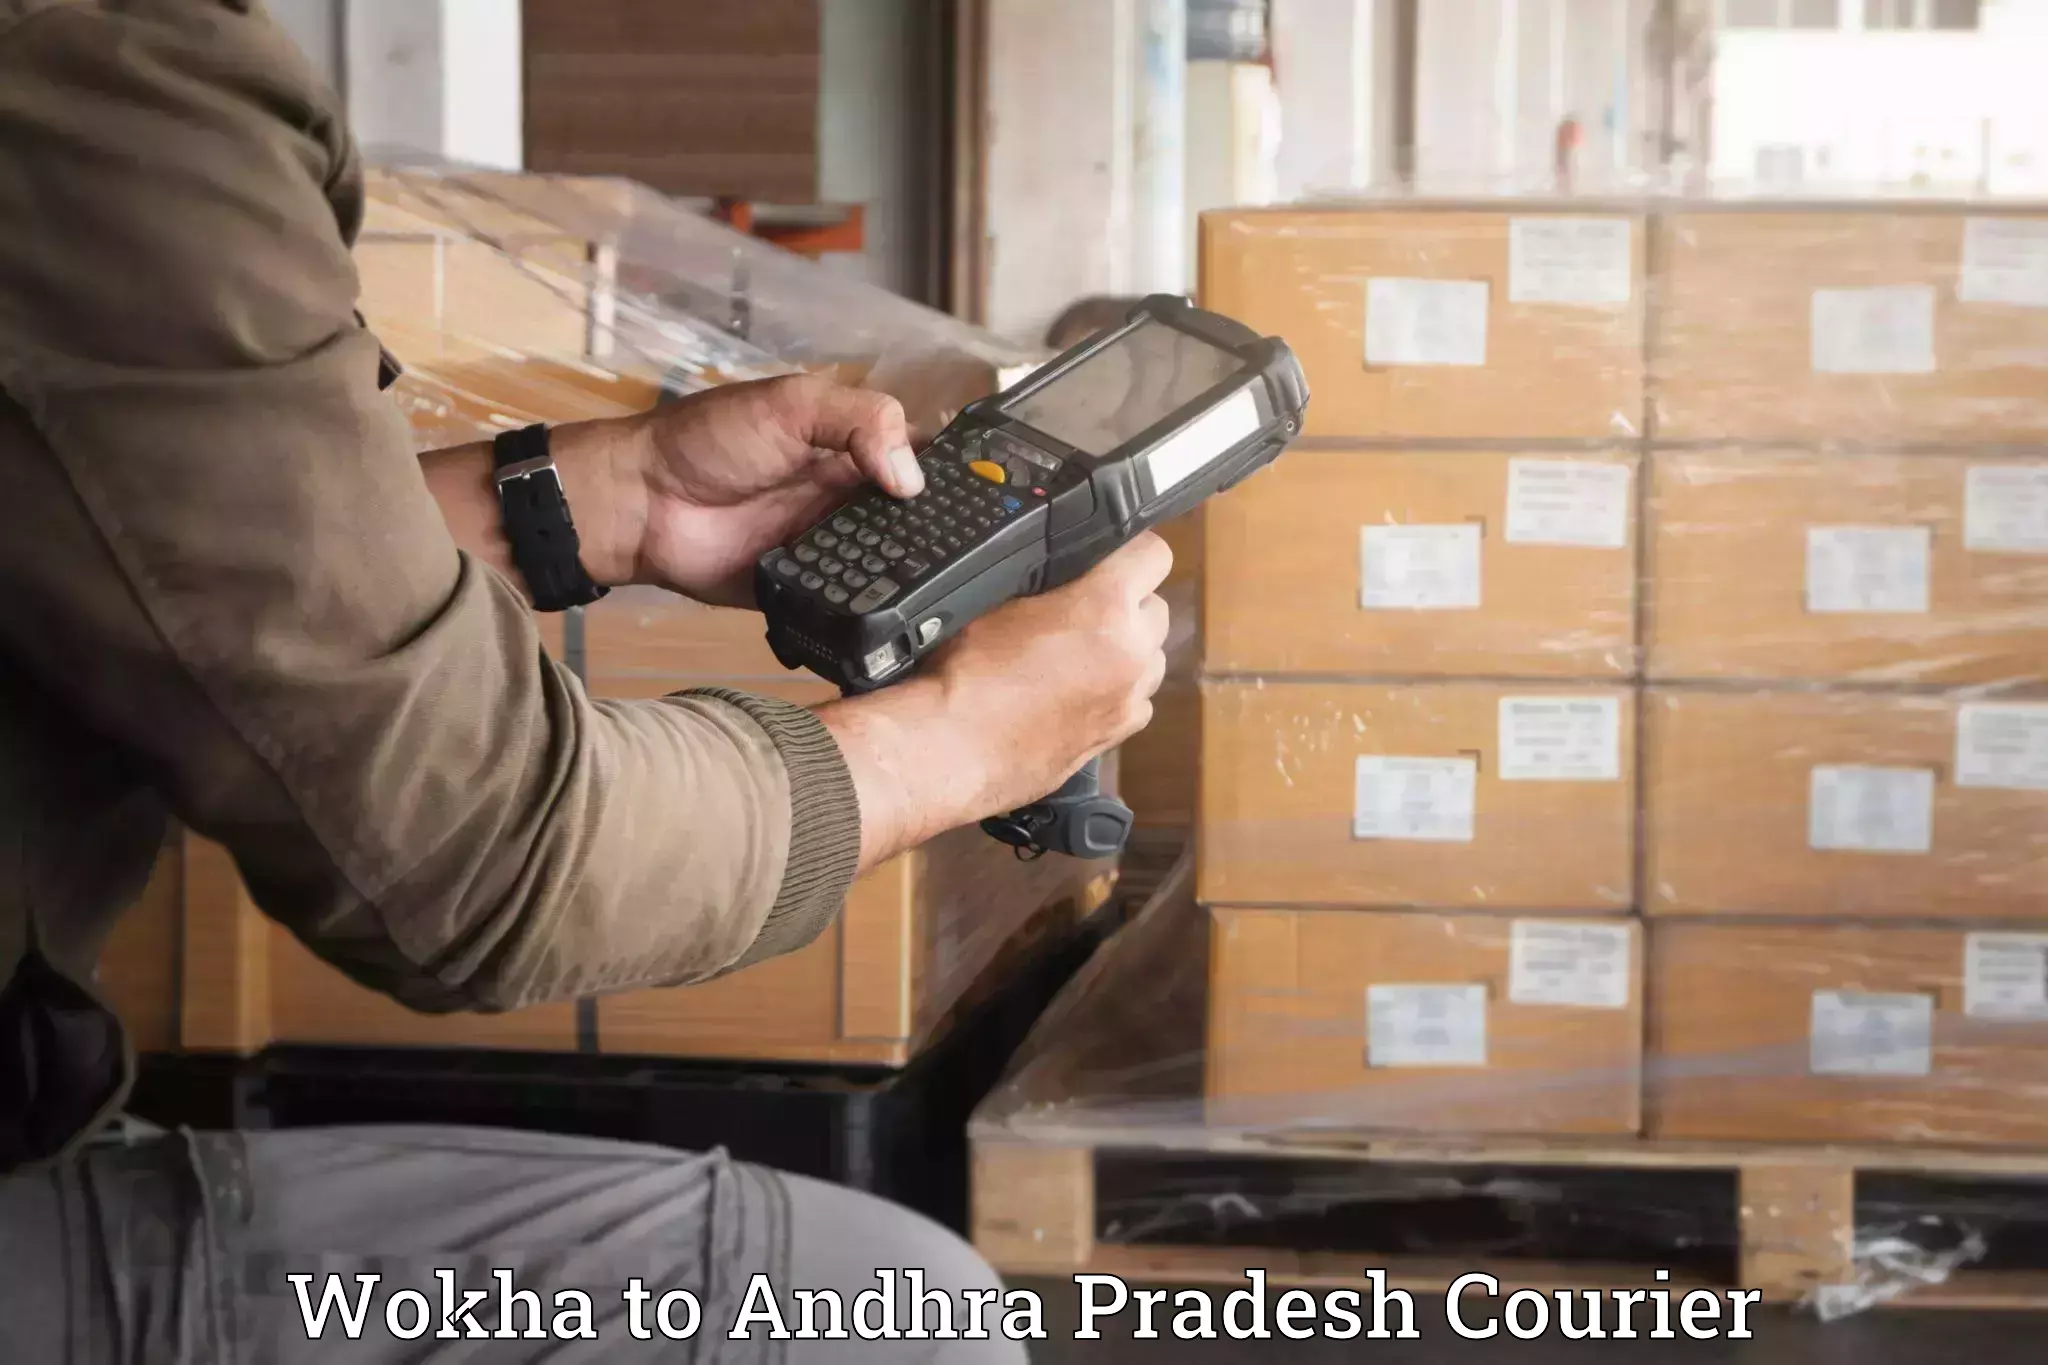 Full-service movers Wokha to Gooty